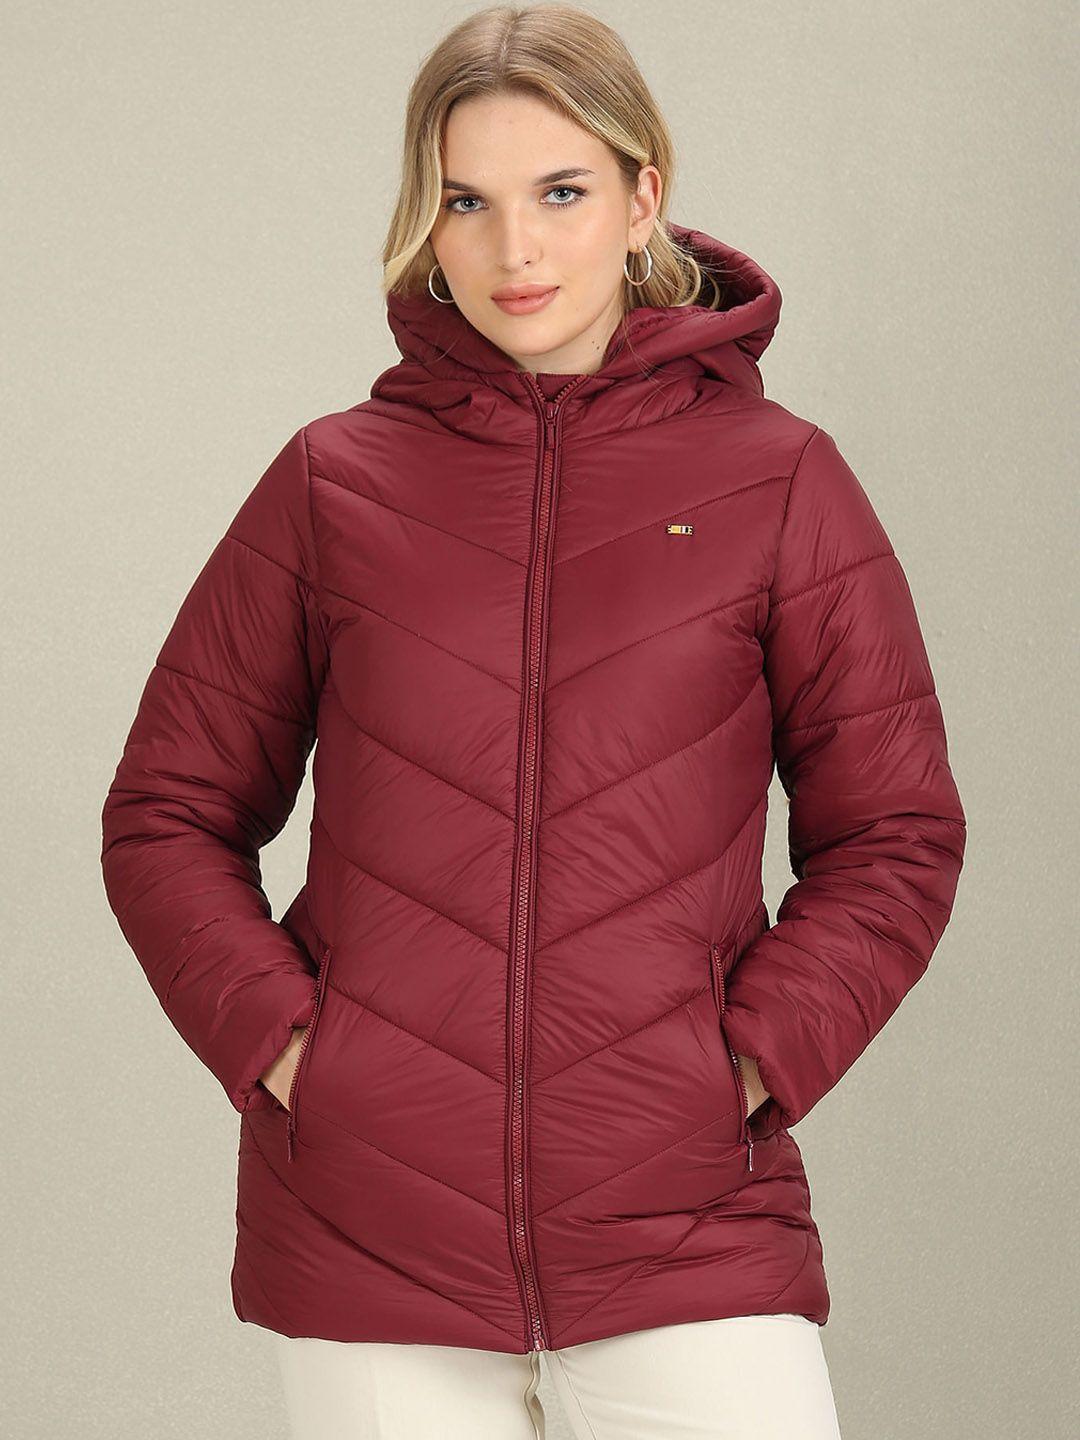 u.s. polo assn. women hooded longline puffer jacket